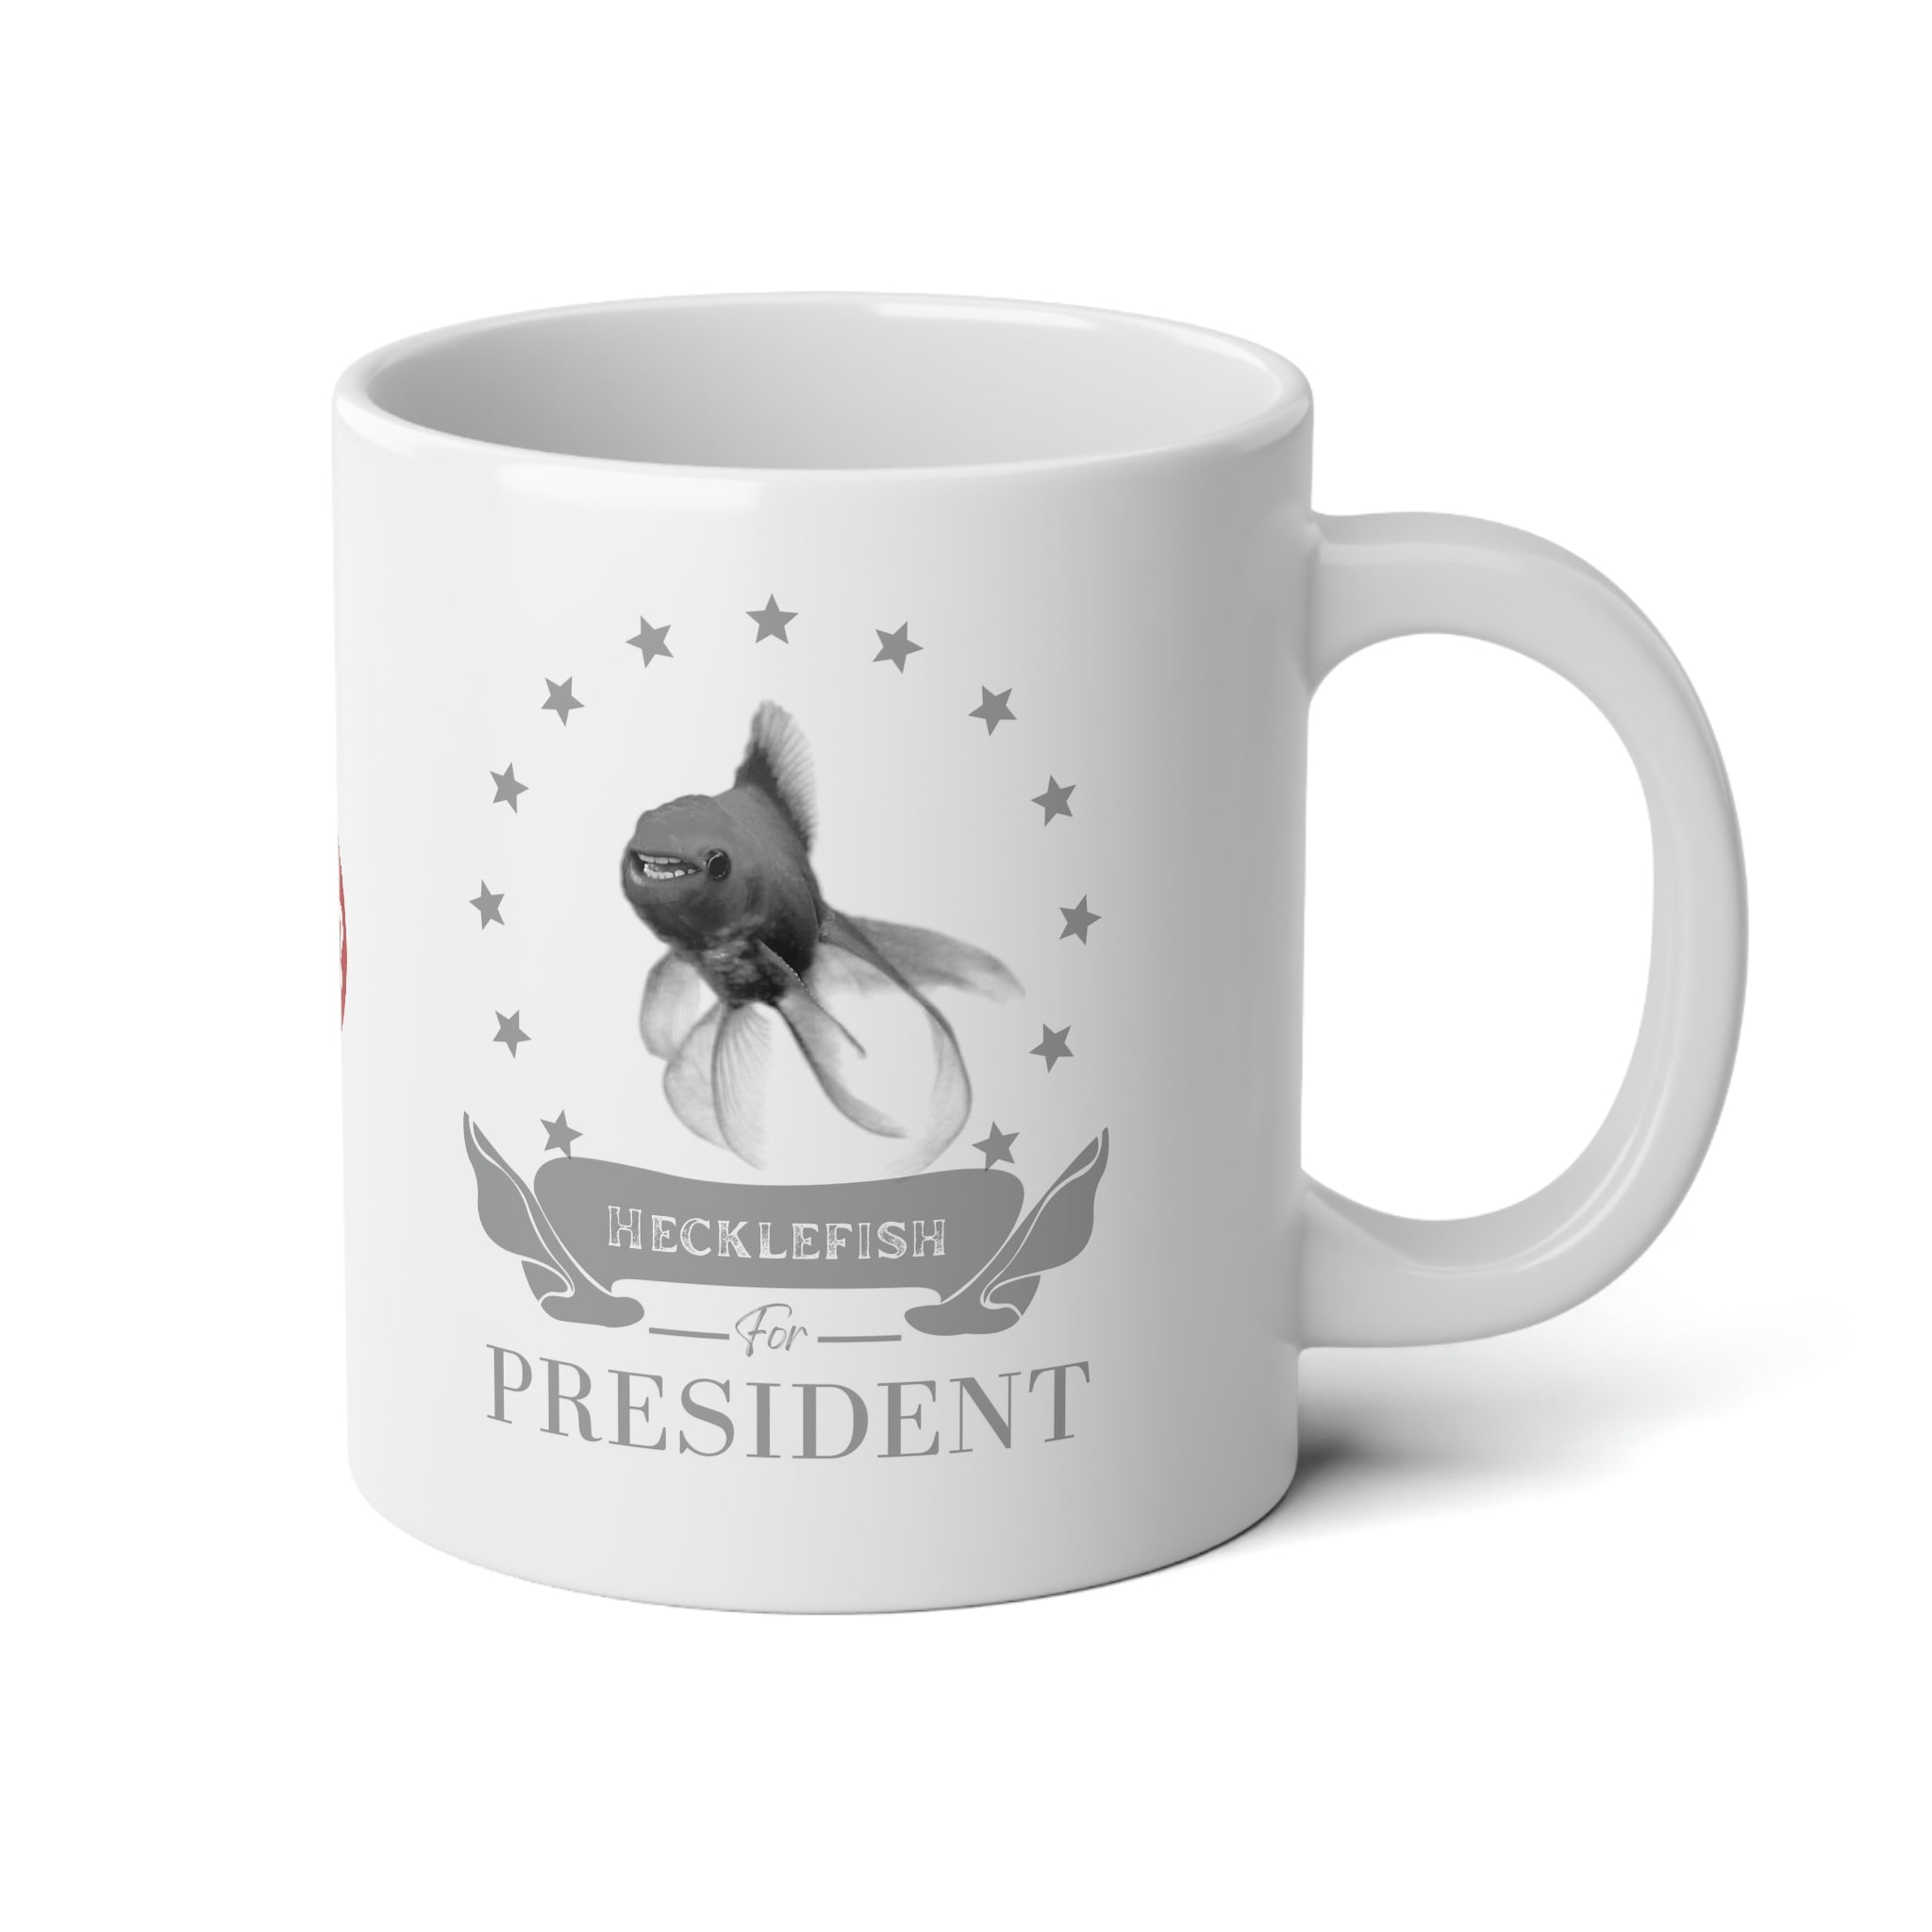 Hecklefish for President Jumbo Mug, 20oz